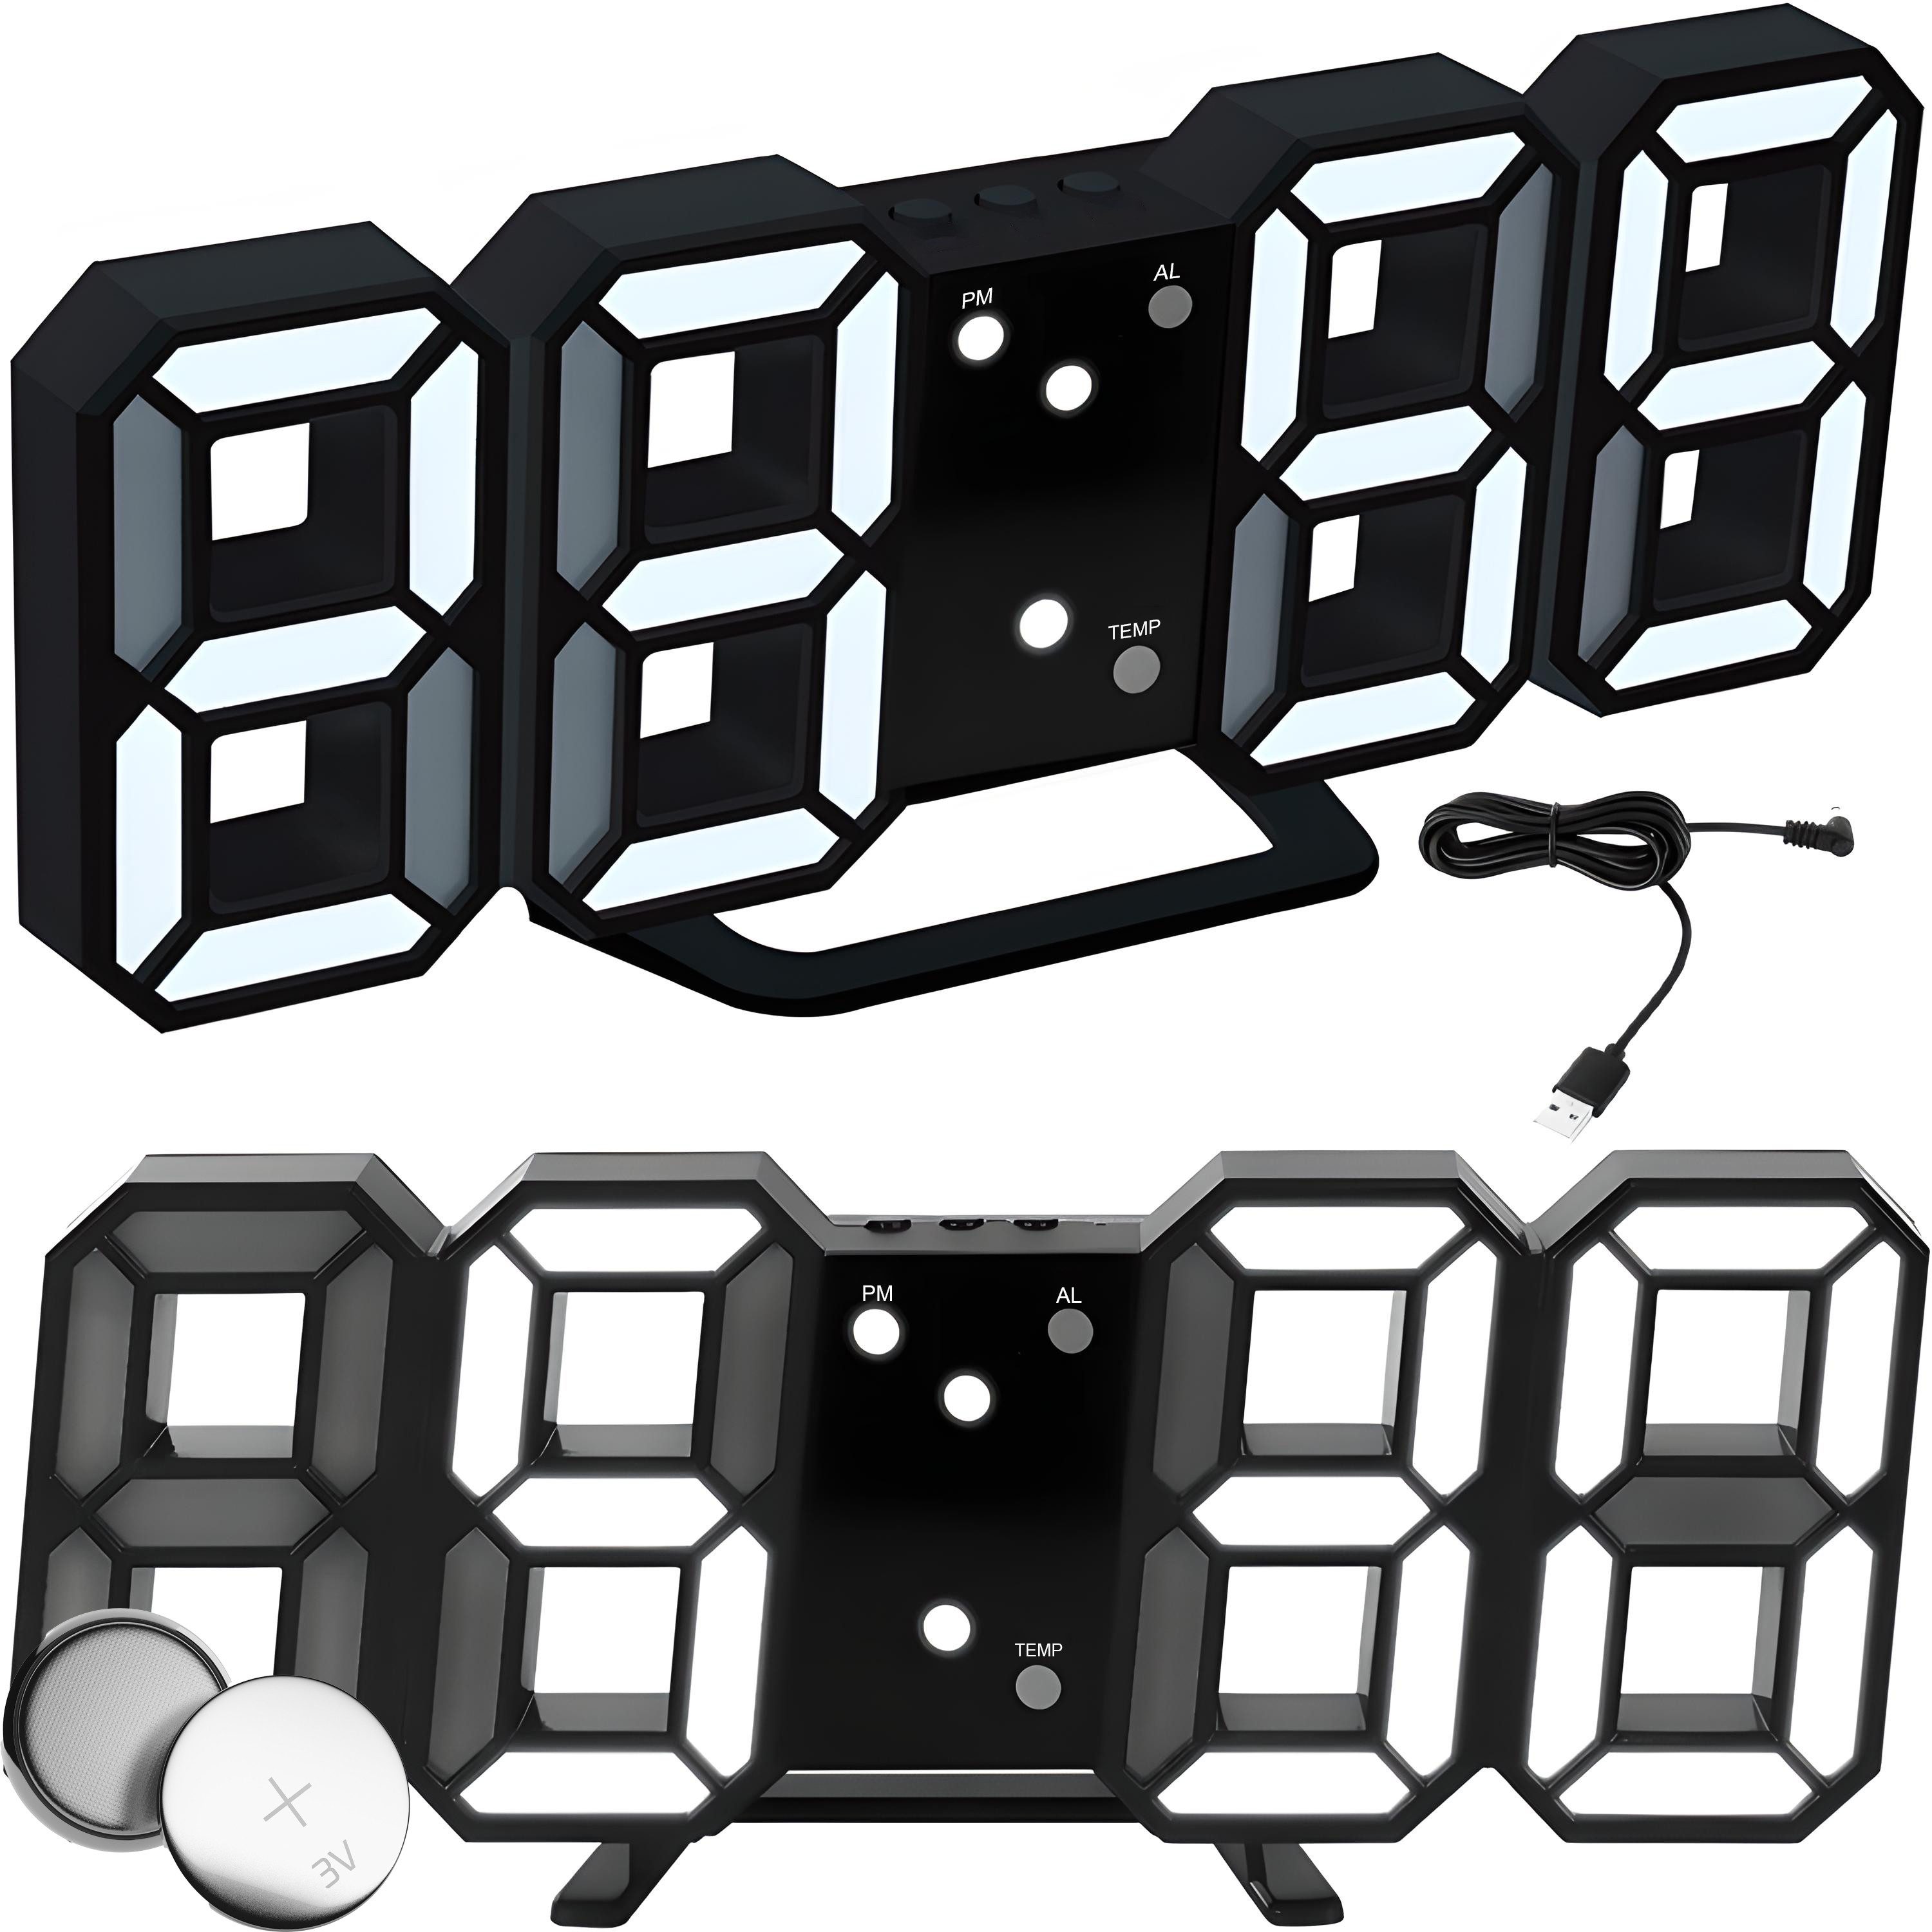 Retoo Wecker 3D Led Wecker Digital Tischuhr Moderne Digitaluhr Alarm Clock Display Uhr mit Weckfunktion, Wecker mit Schlummerfunktion